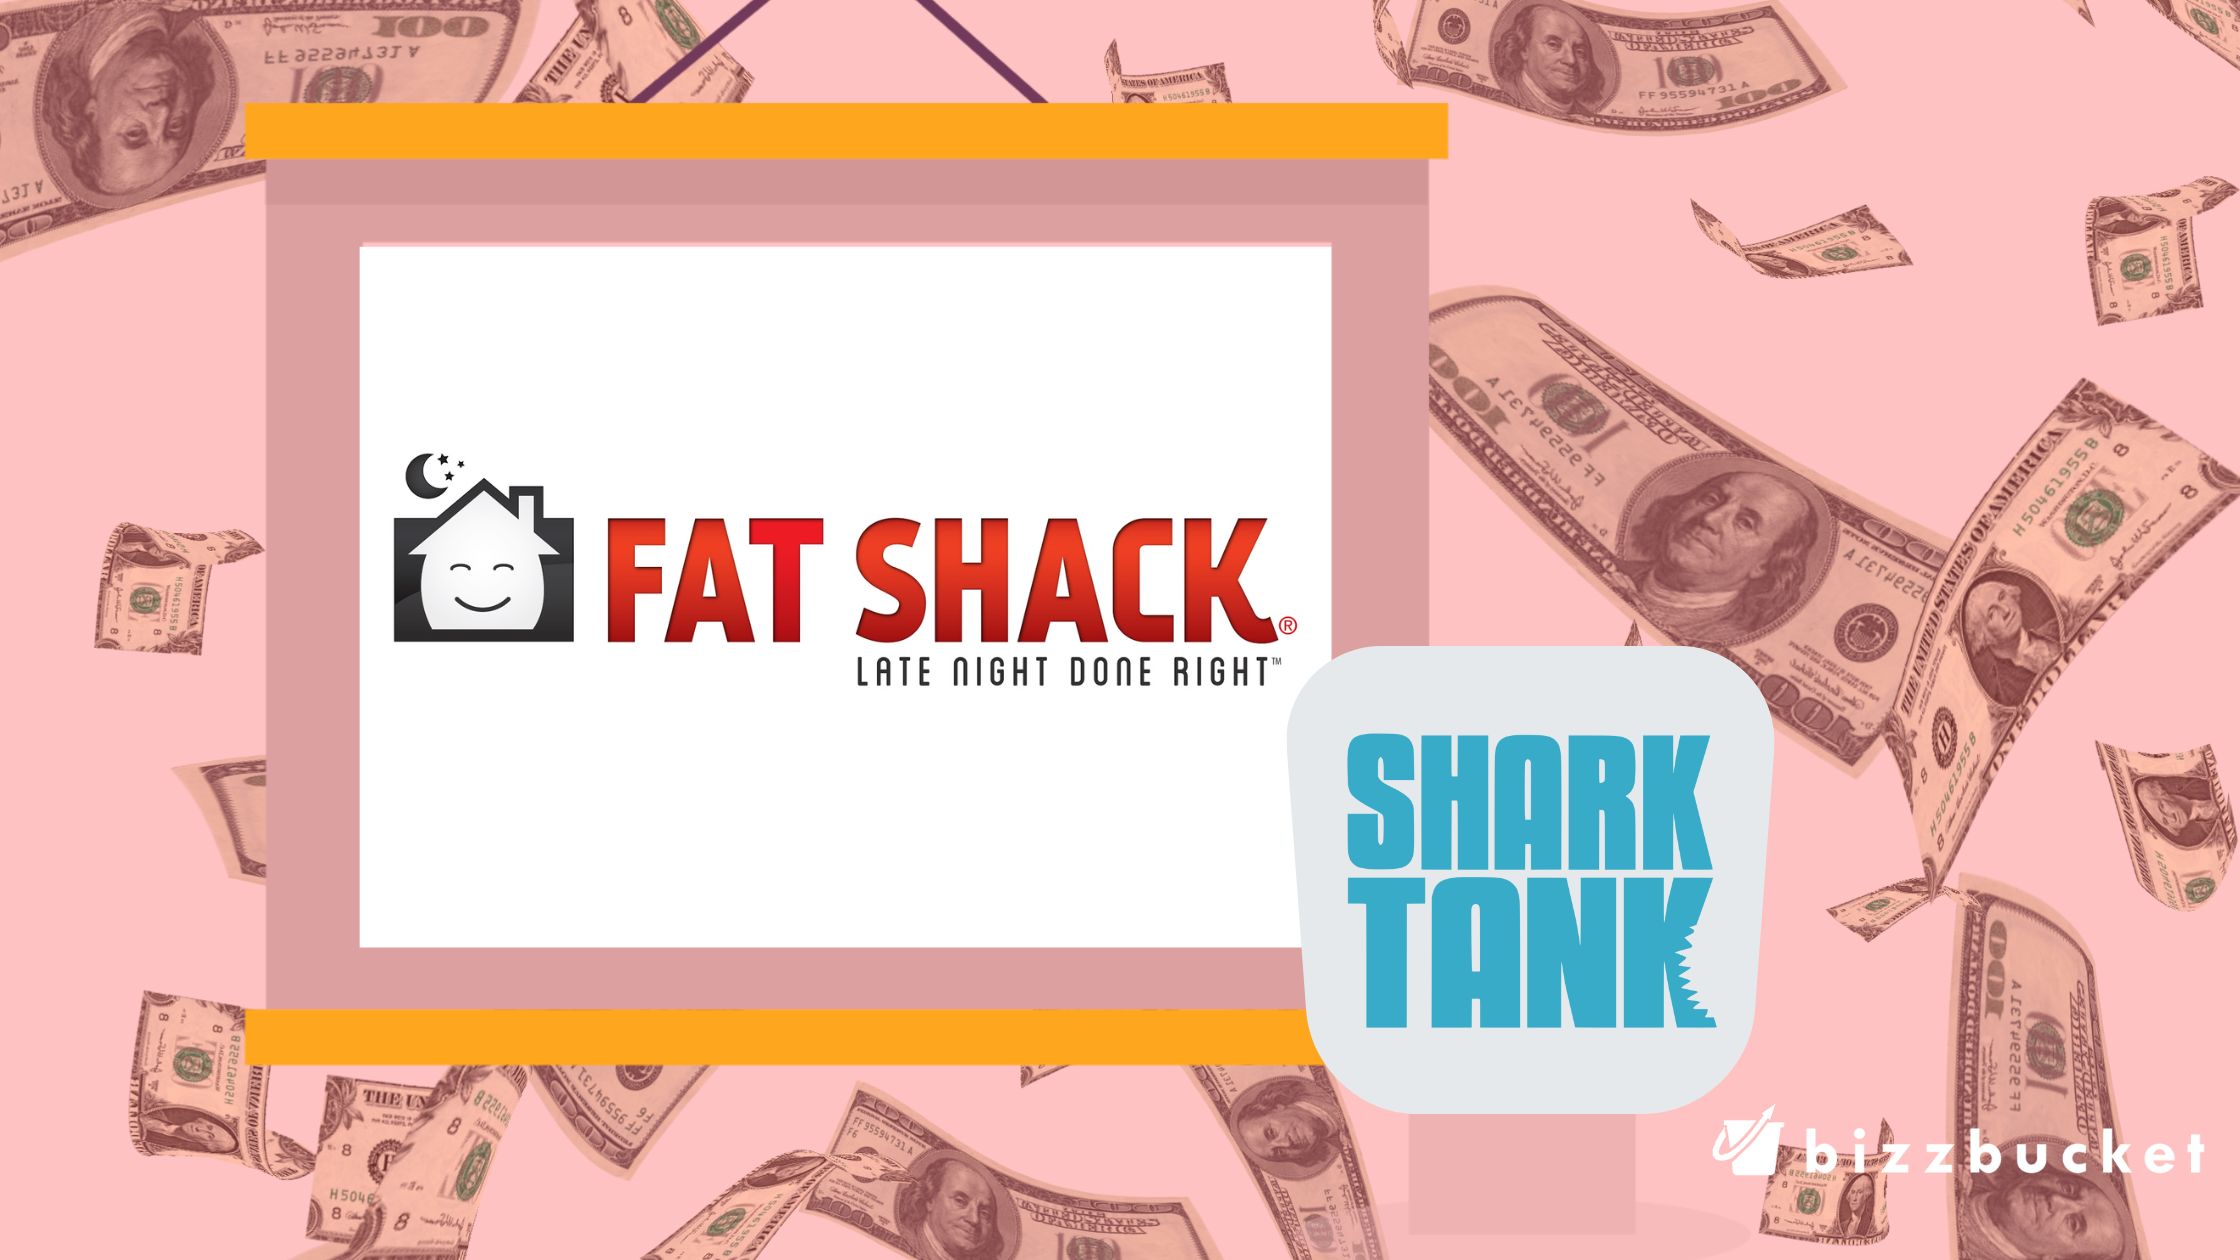 Fat Shack shark tank update